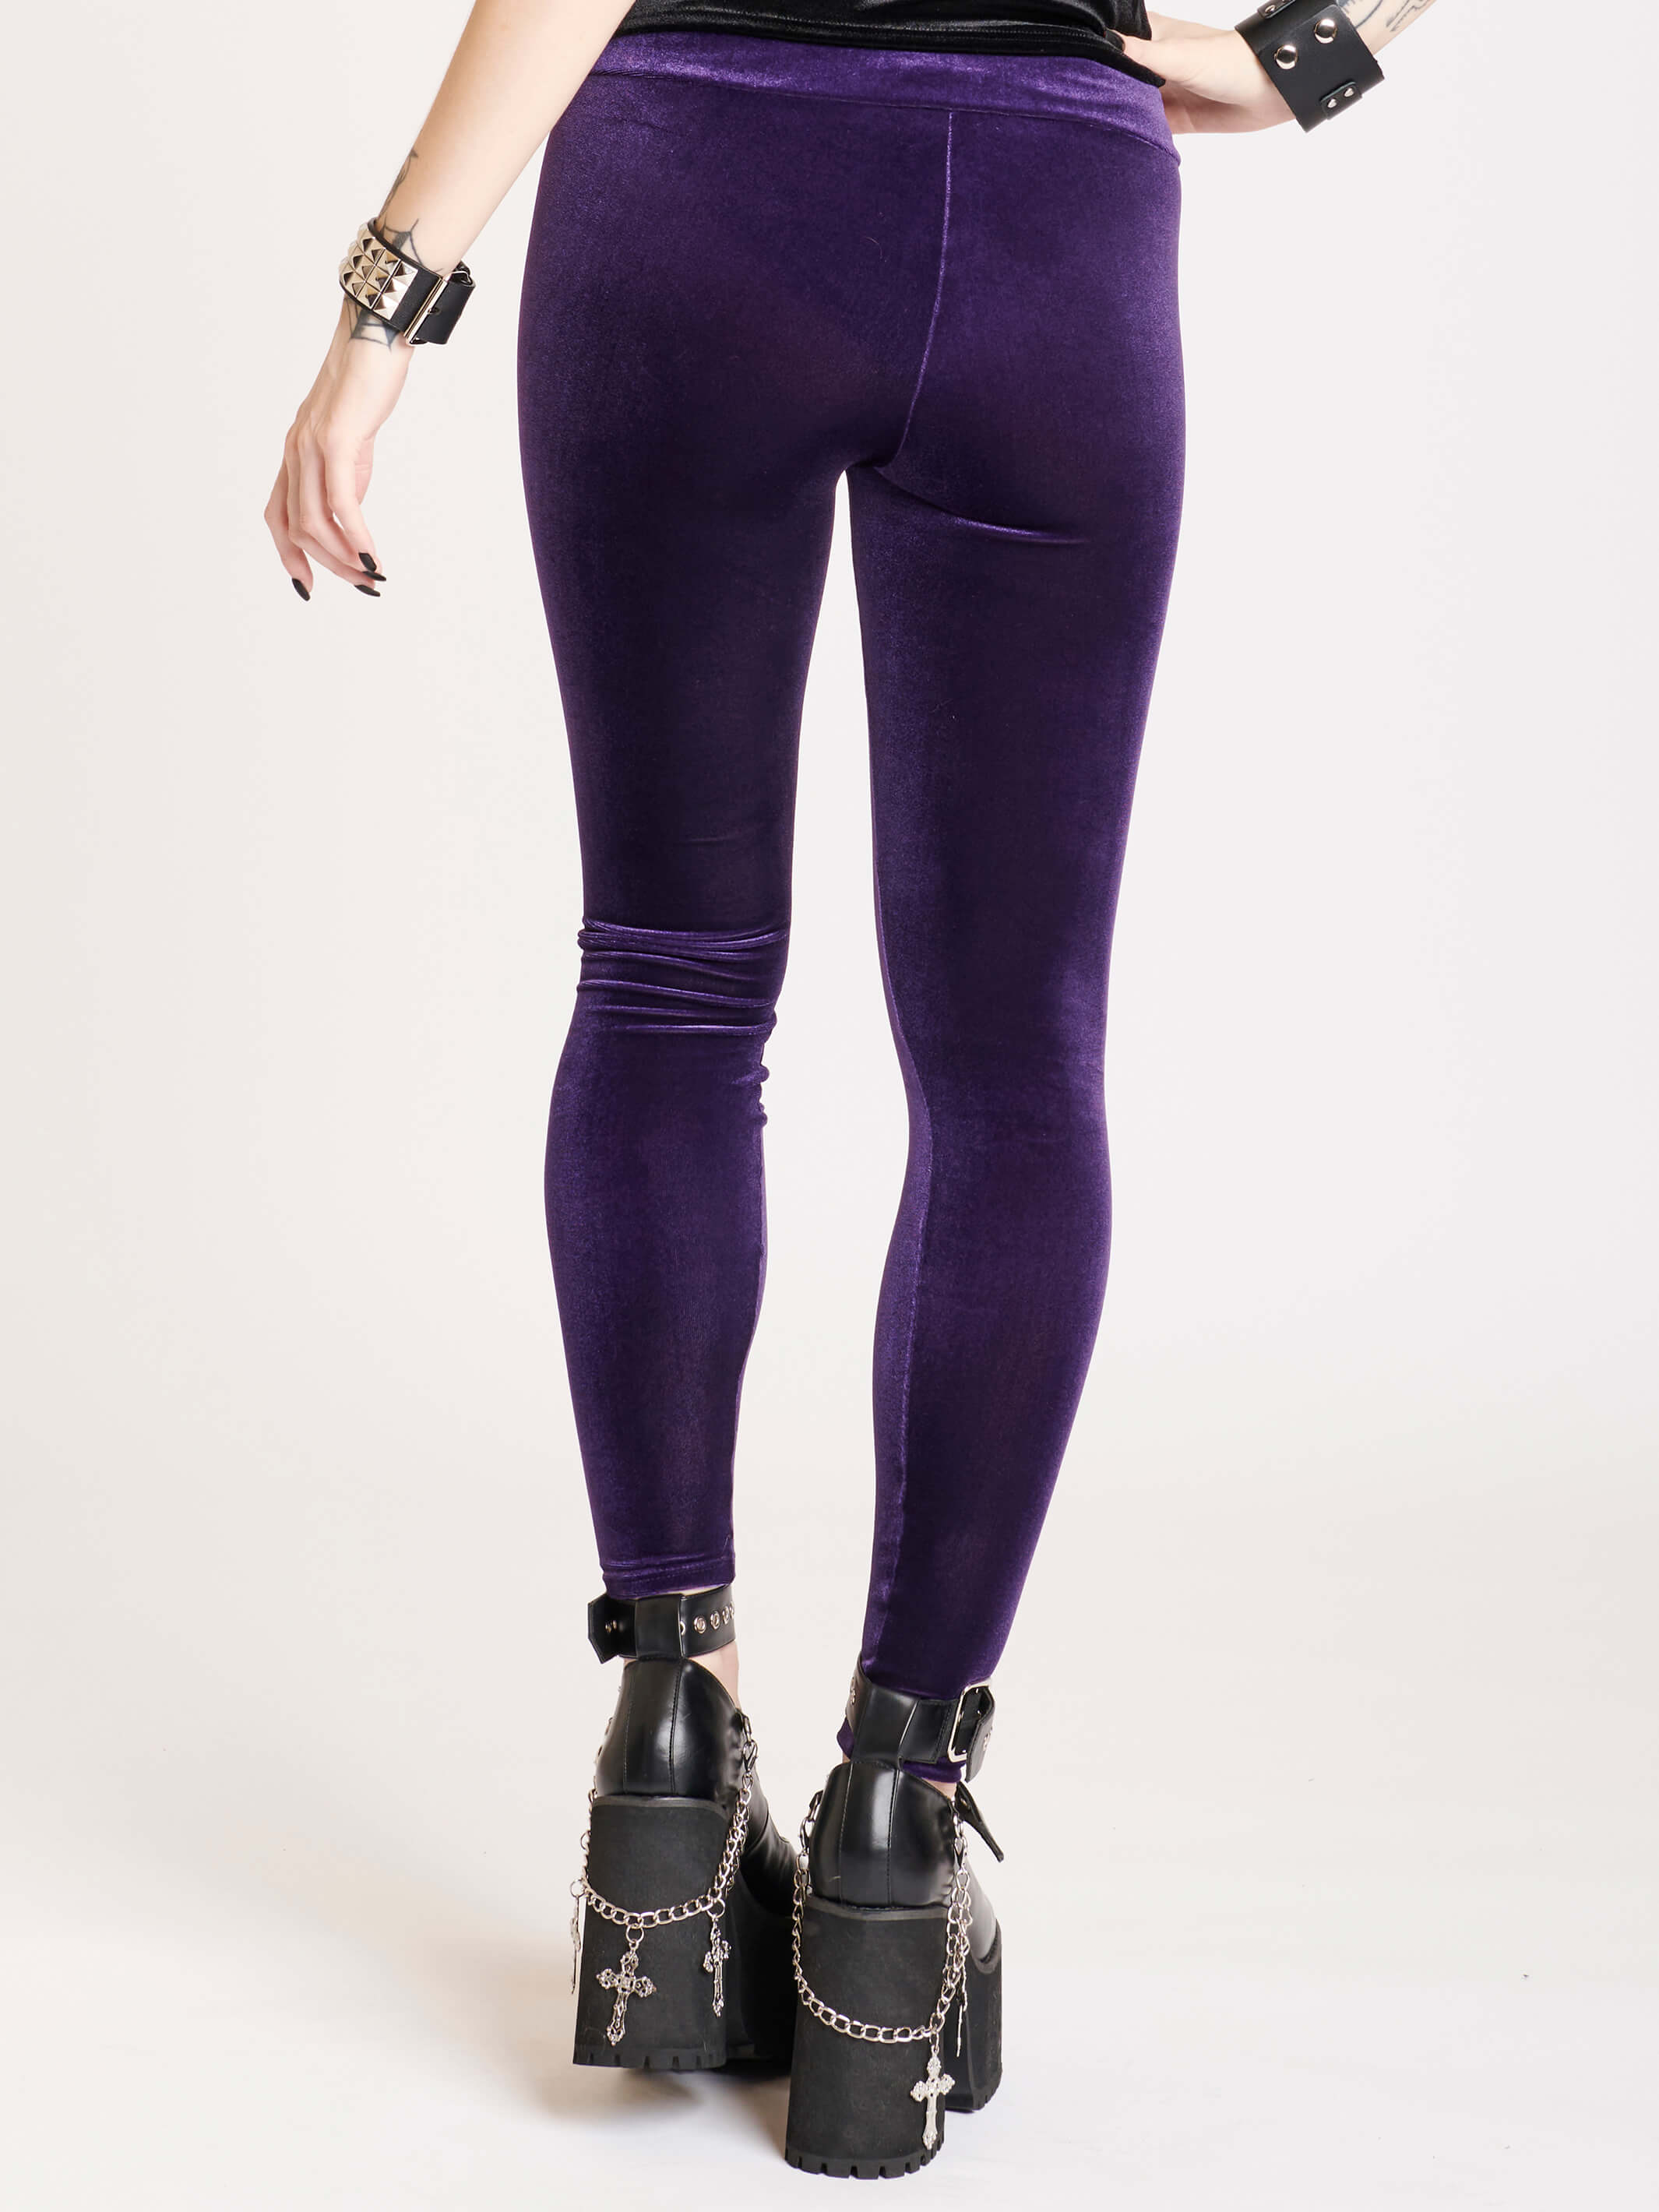 Velvet Leggings - 3 Colors  Velvet leggings, Crushed velvet leggings, Rave  outfits festivals